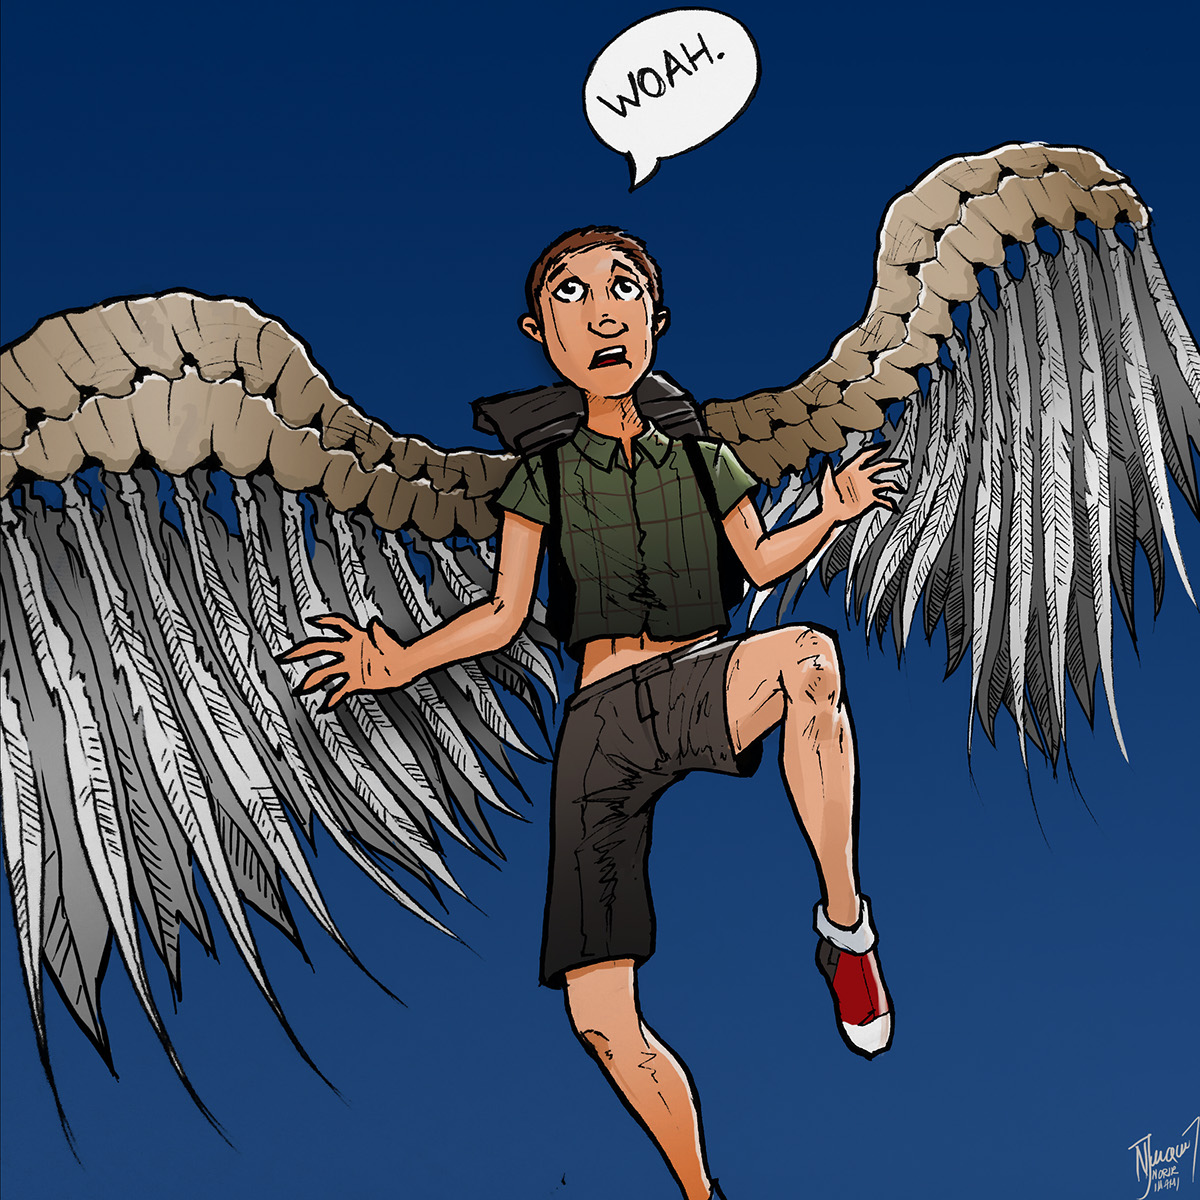 angel wings backpack Pack kid Flying comic book fantasy SKY